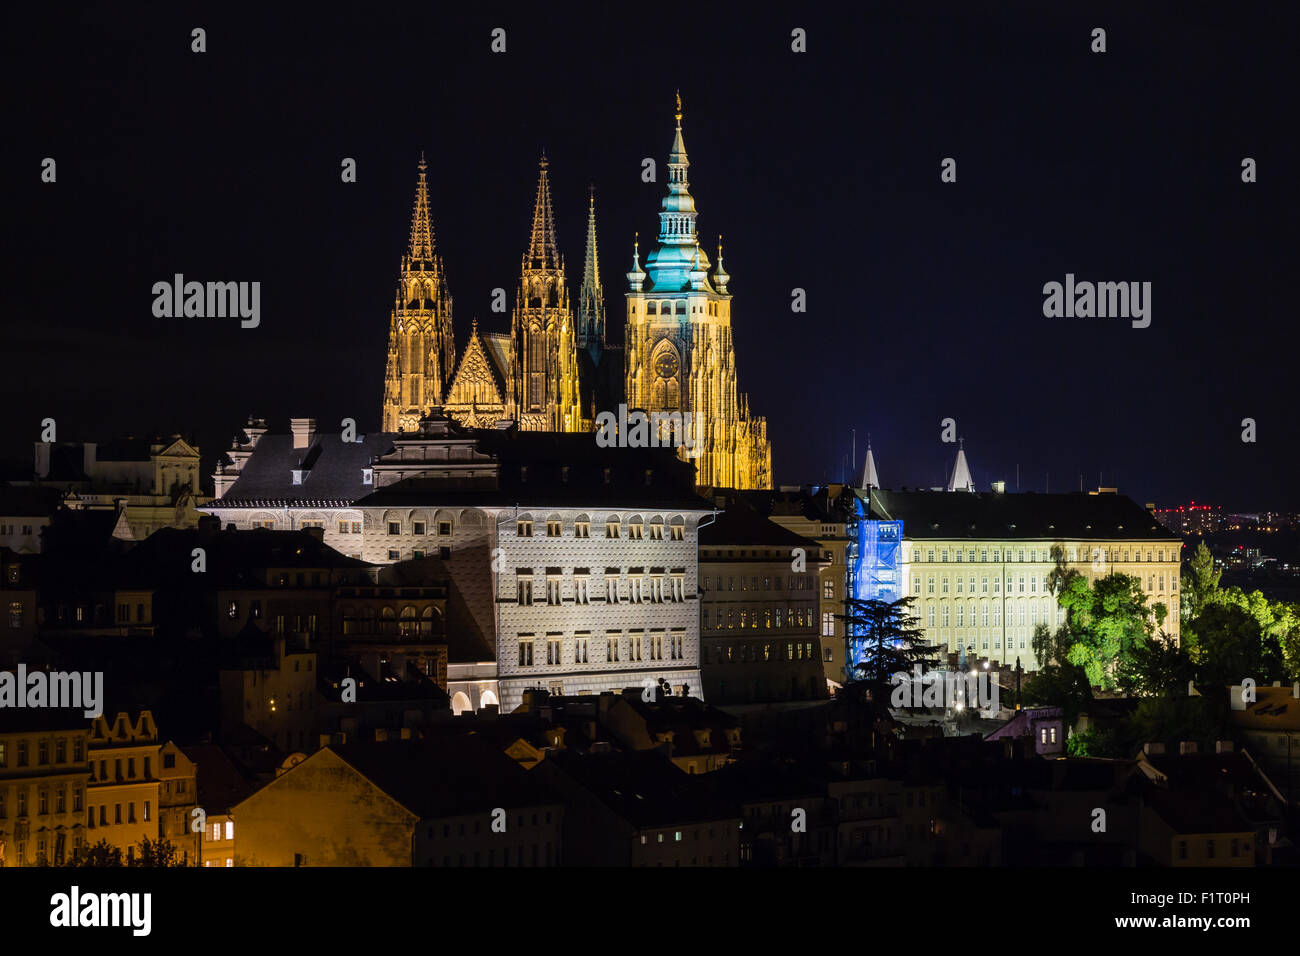 Praga, Repubblica Ceca. Foto notturna del Ponte Carlo, il castello e gli edifici storici Foto Stock